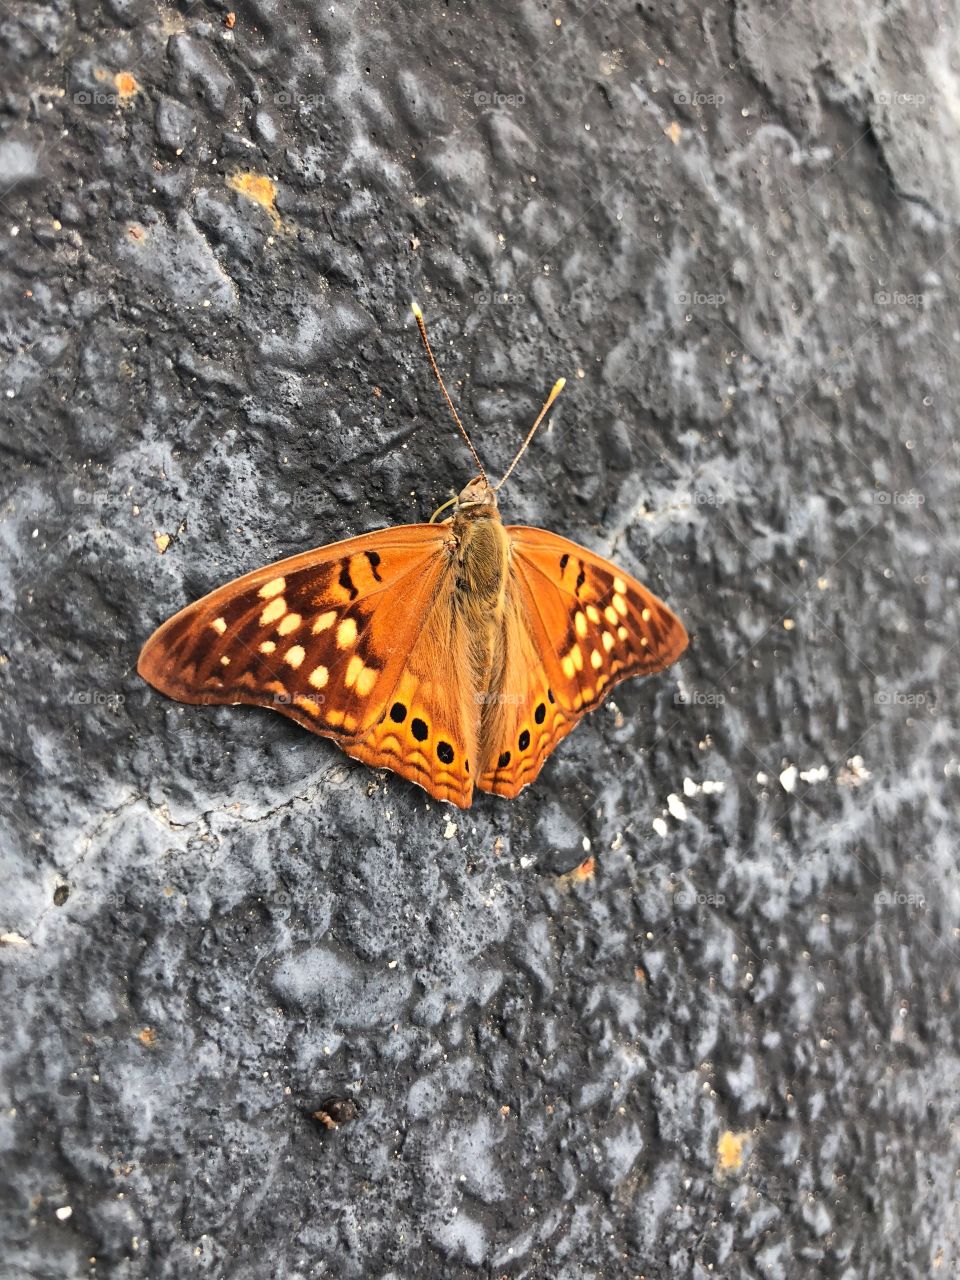 Butterfly season